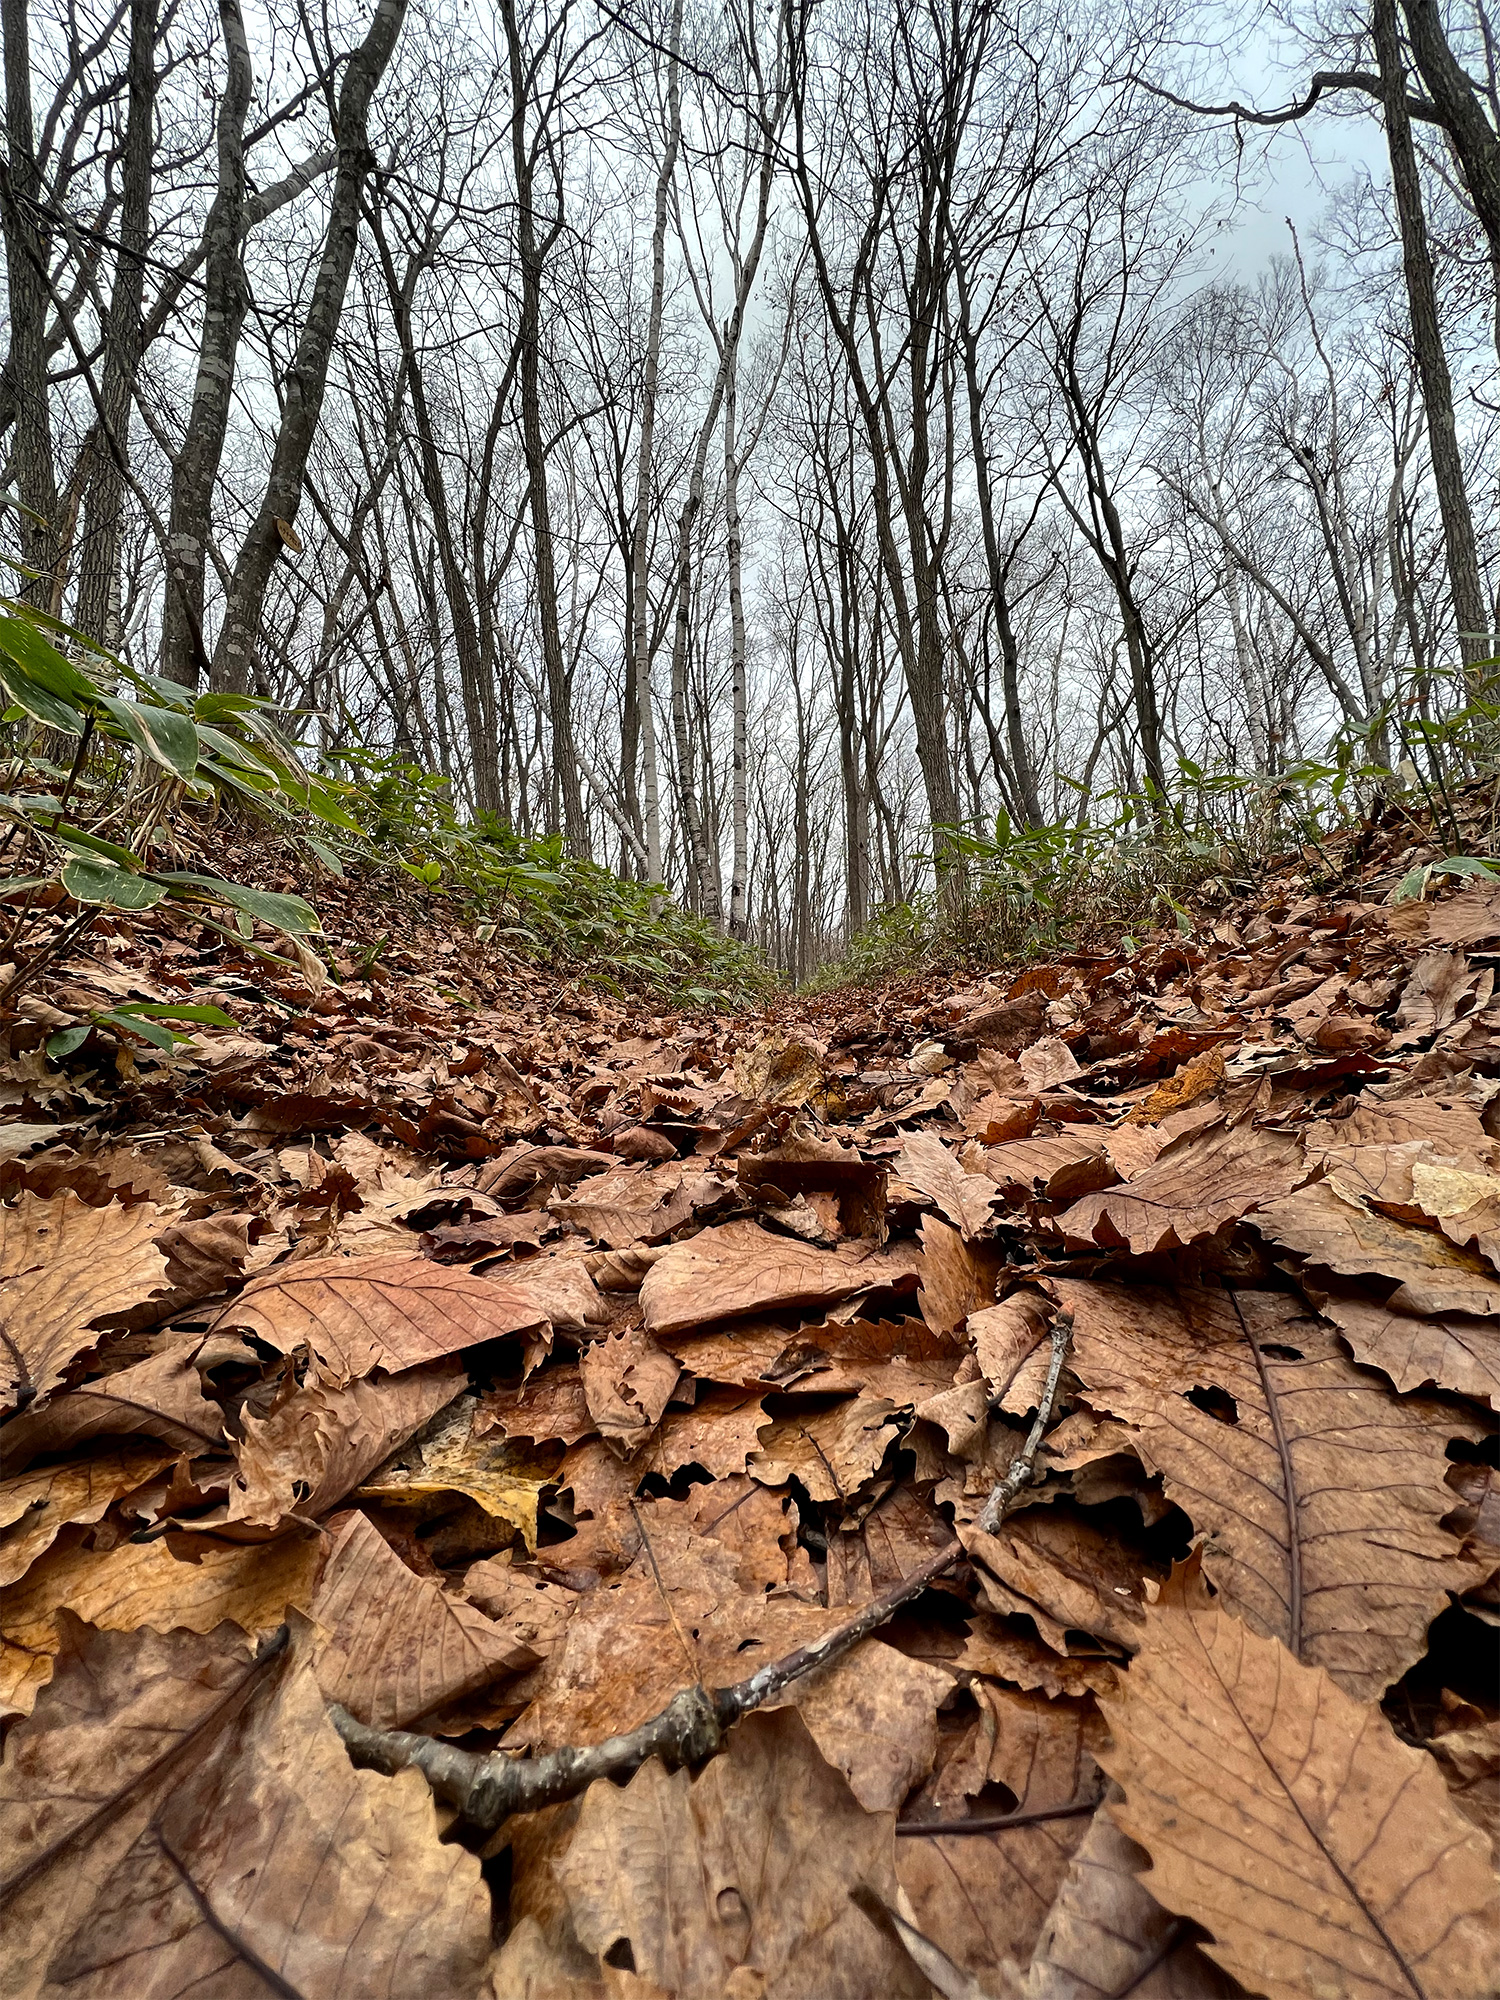 枯葉が積もった森の道の写真のフリー素材